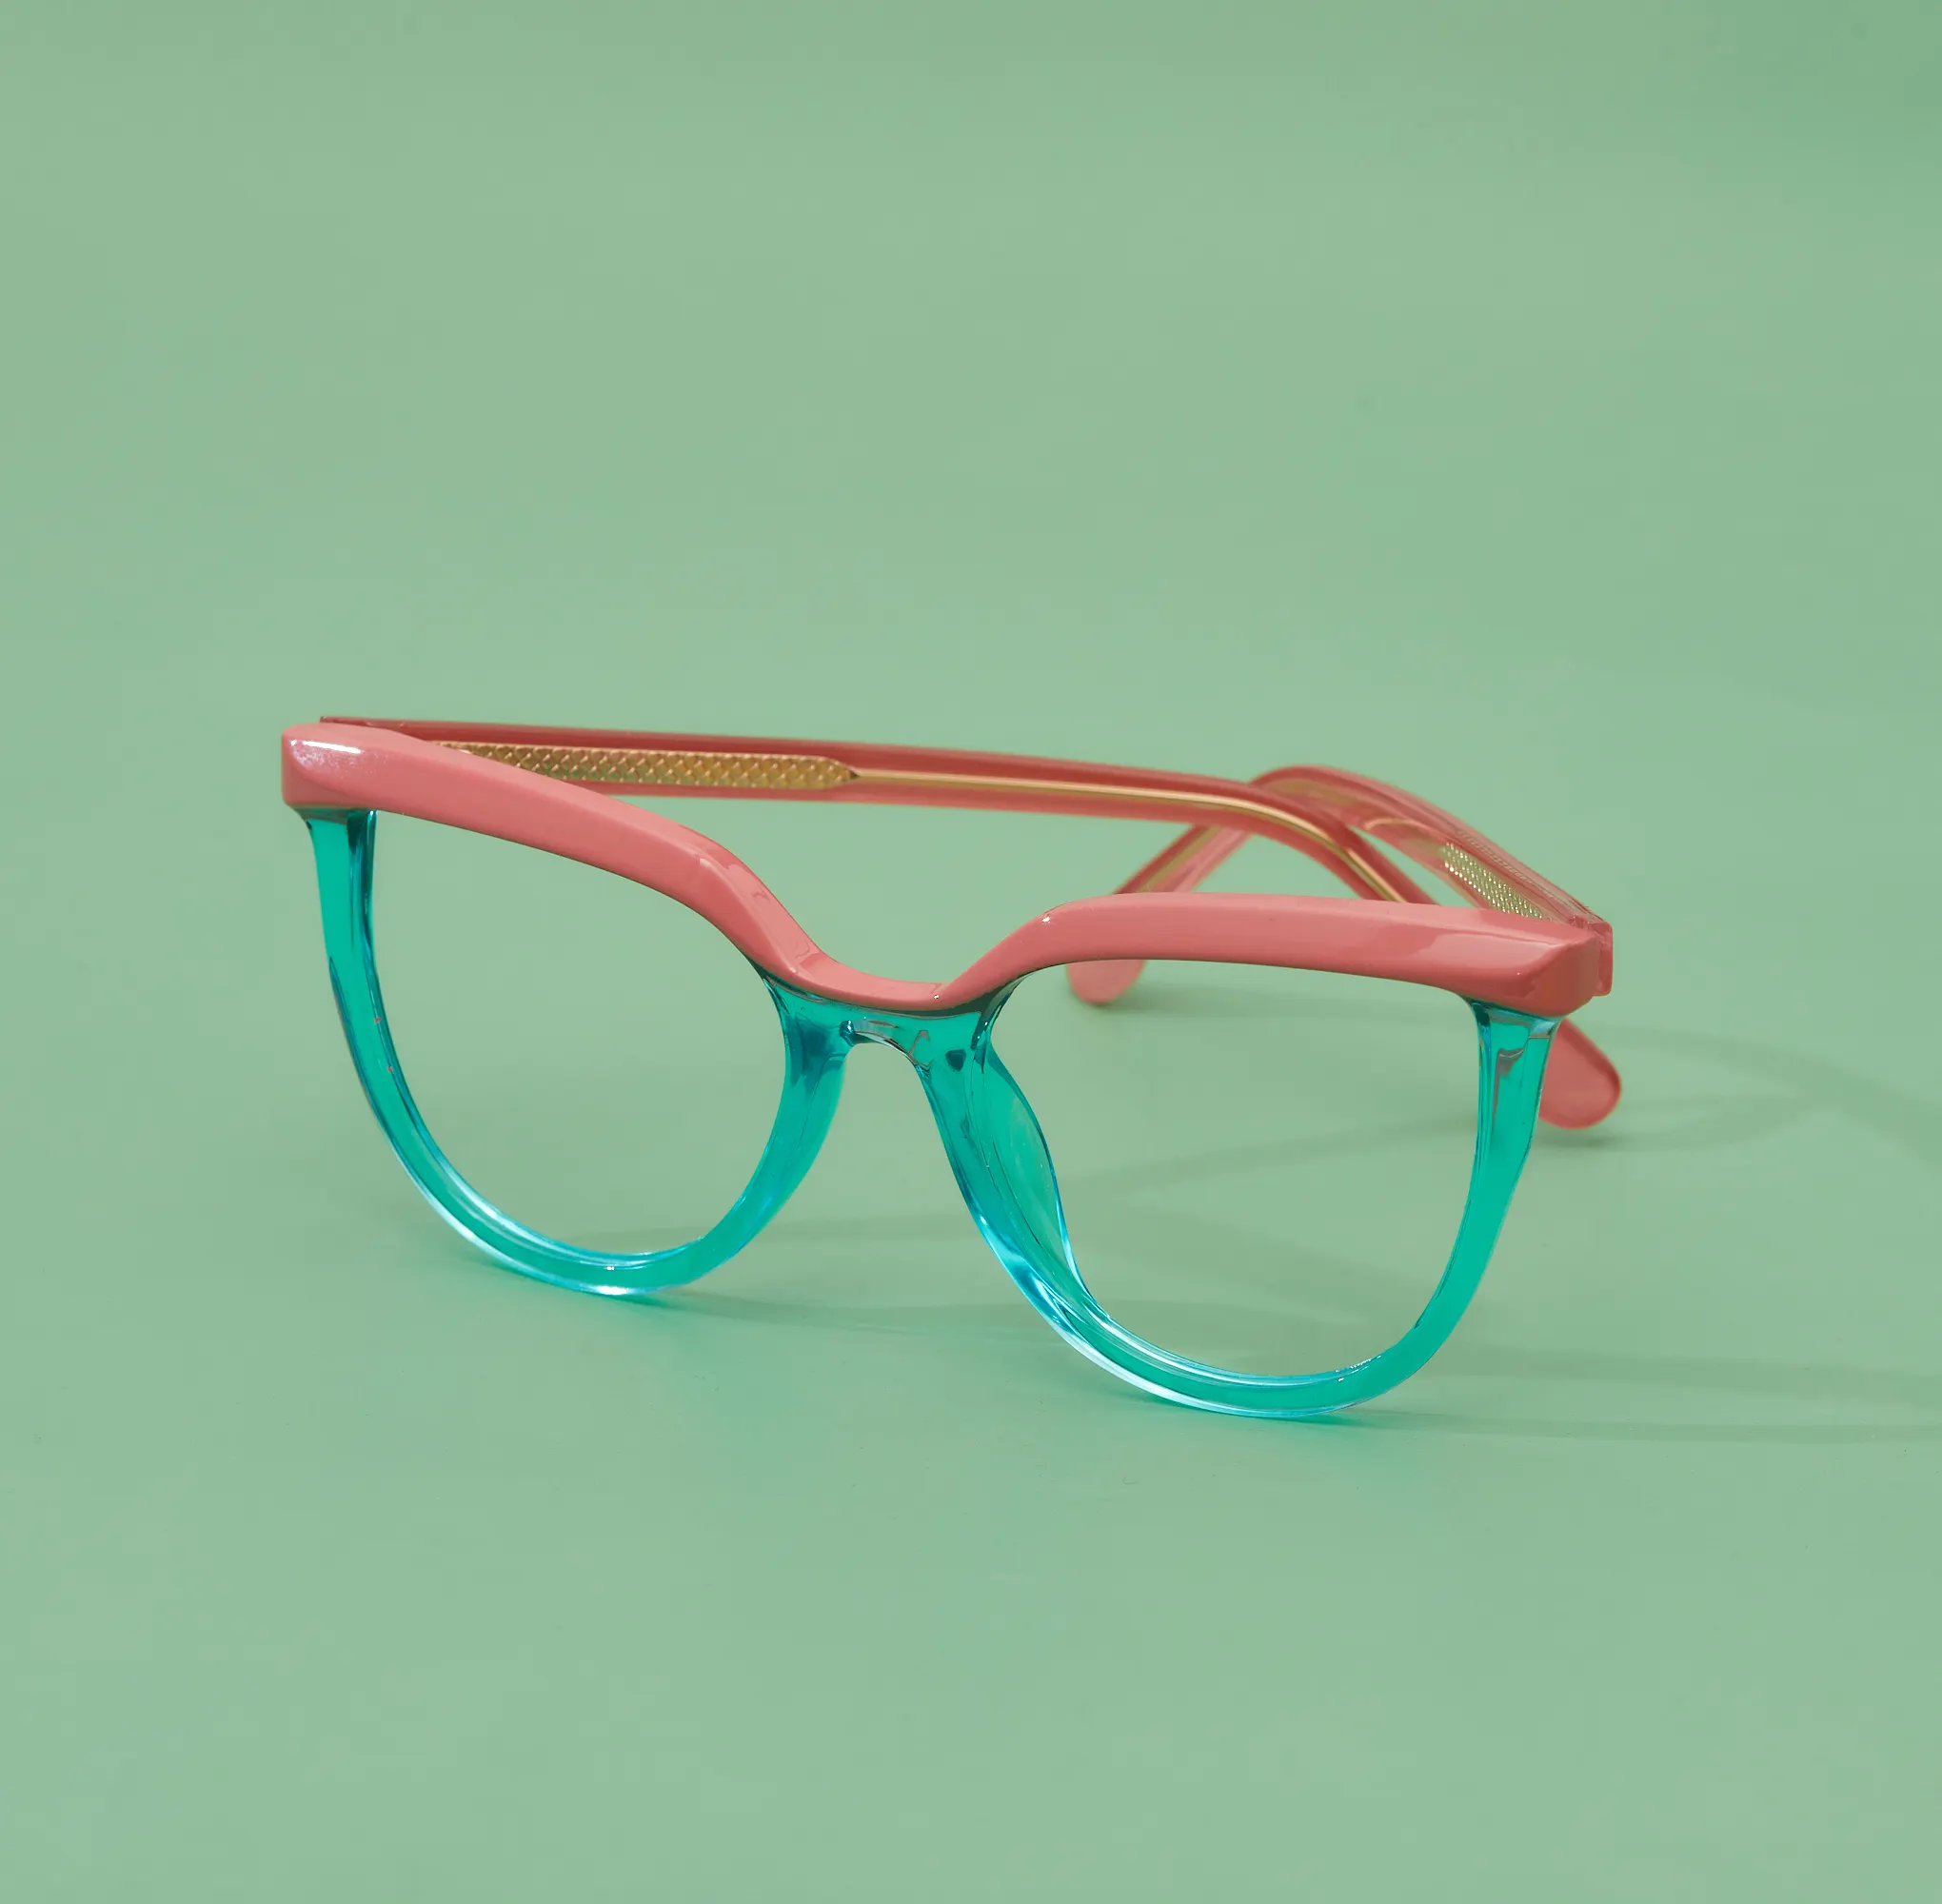 82032 패션 안경 프레임 안티 블루 라이트 차단 안경 여성 캔디 다채로운 광학 TR 프레임 CP 플러그인 안경